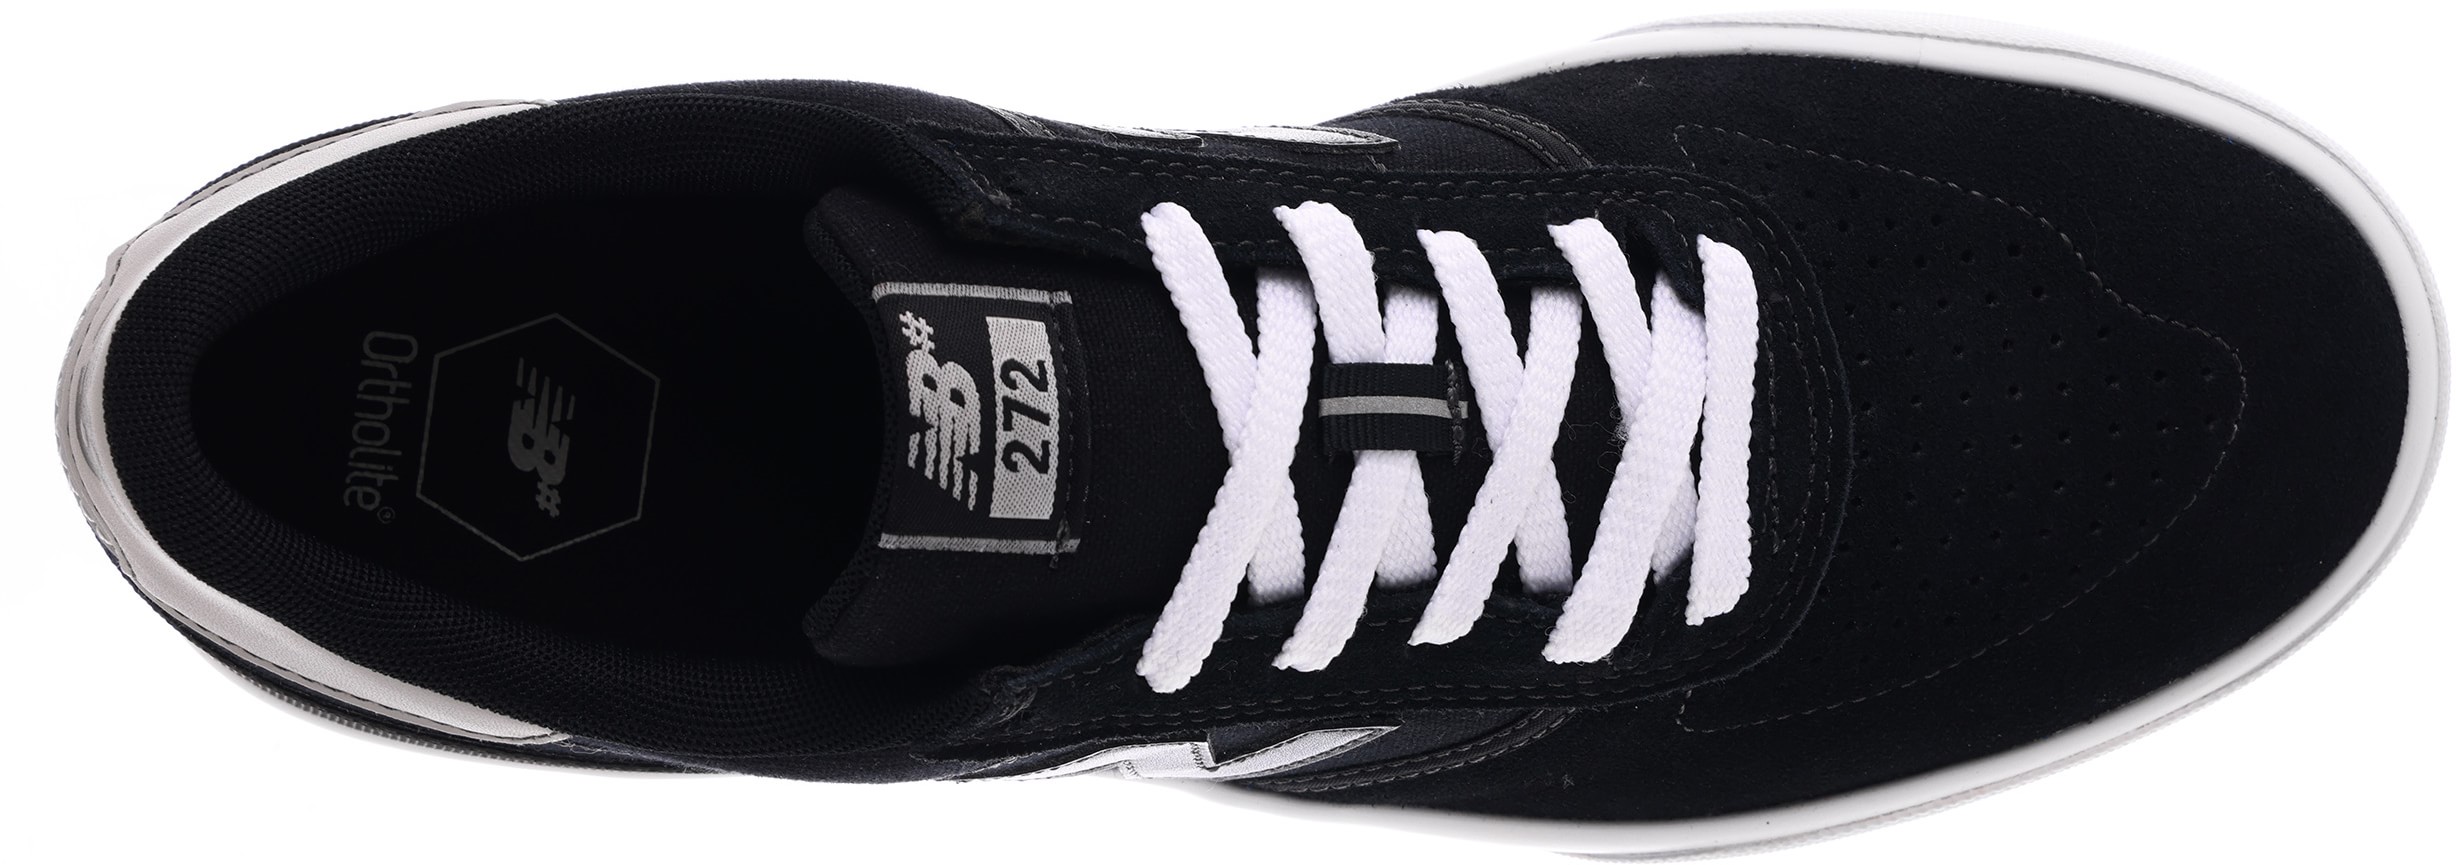 New Balance Numeric 272 Skate Shoes - black/black/white | Tactics